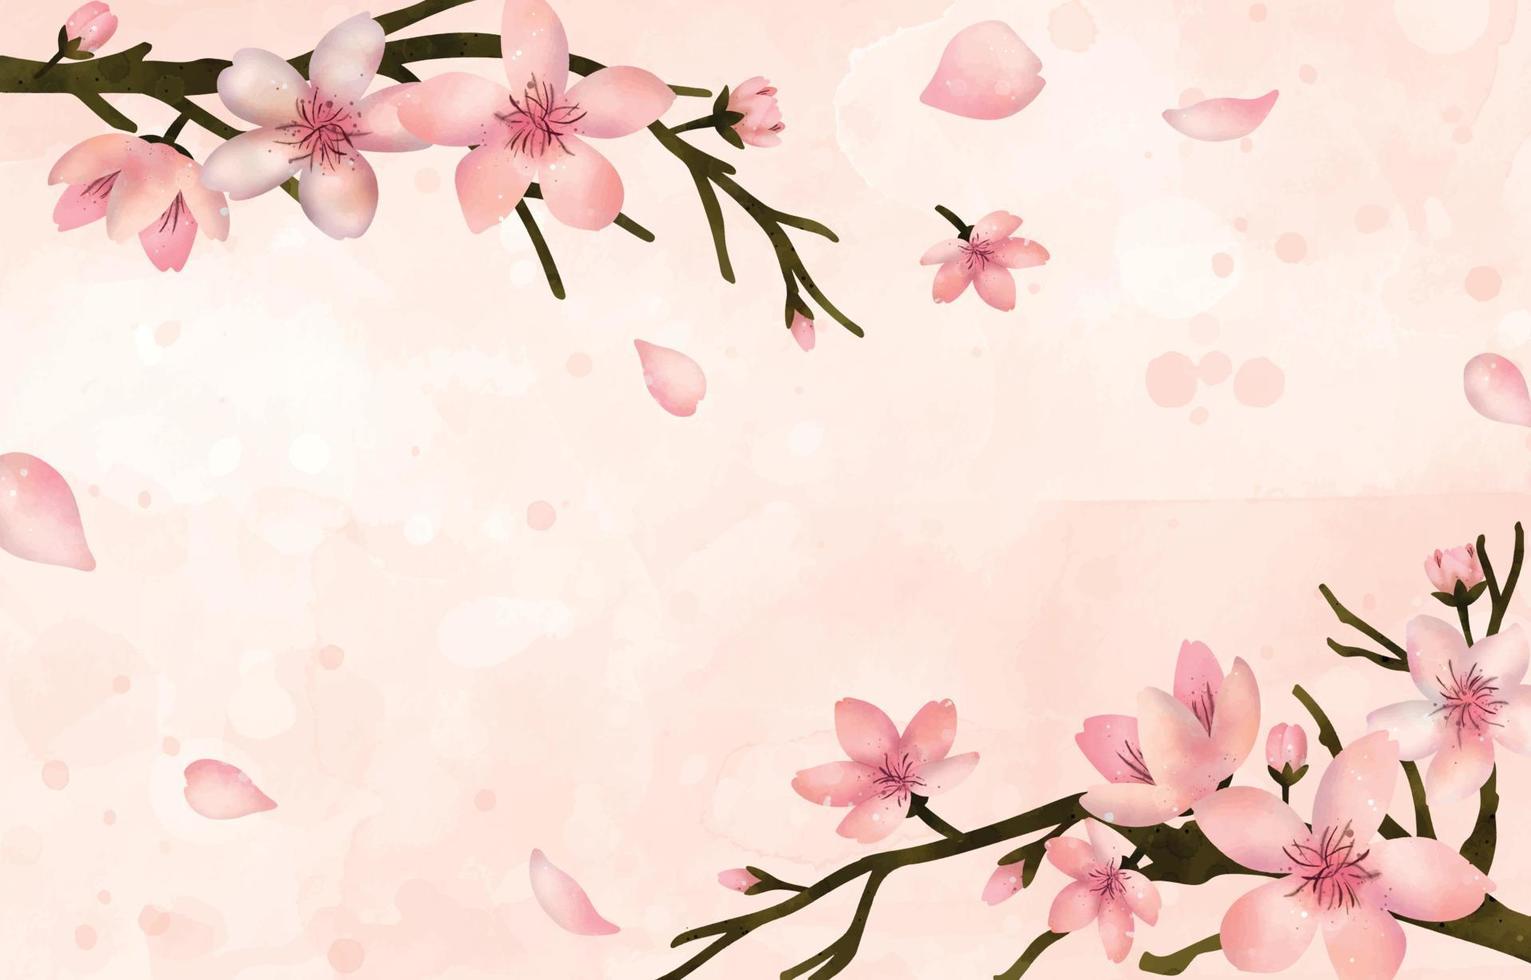 Peach Blossom Watercolor Splash Background vector